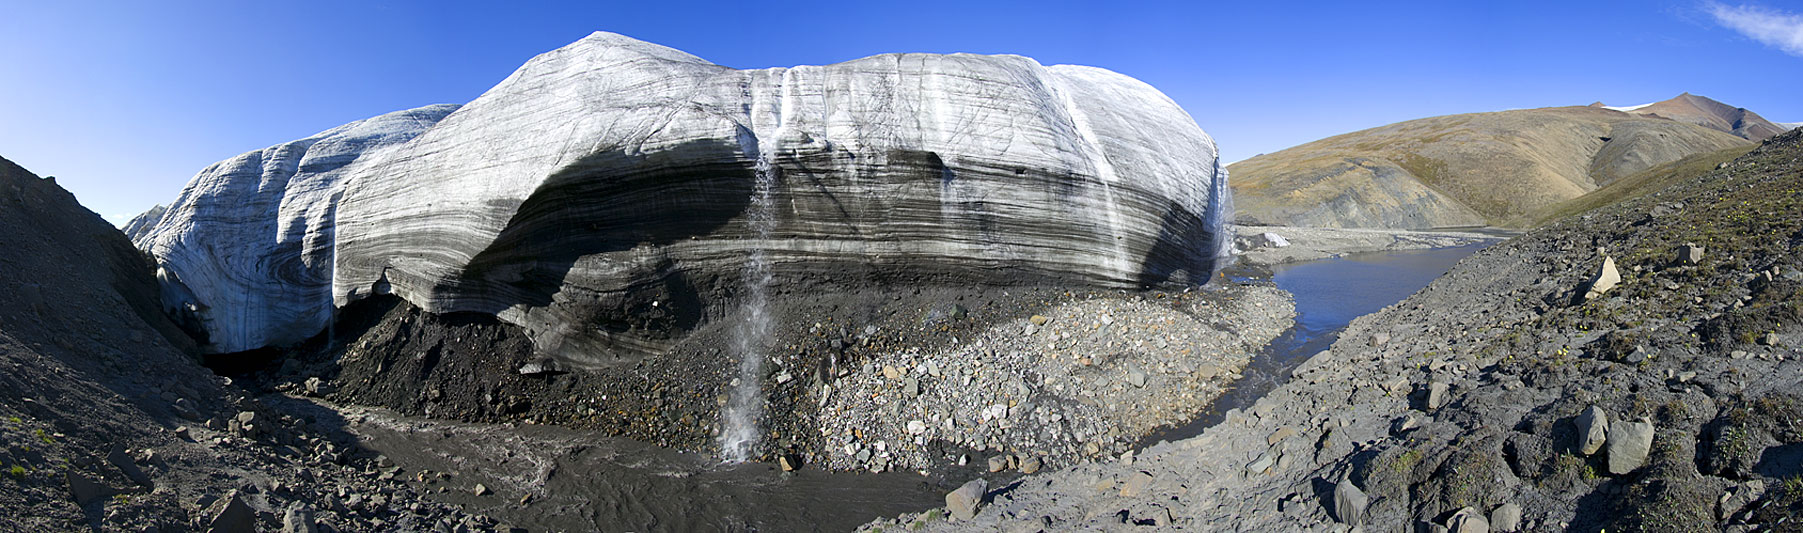 Crusoe Glacier panorama photos